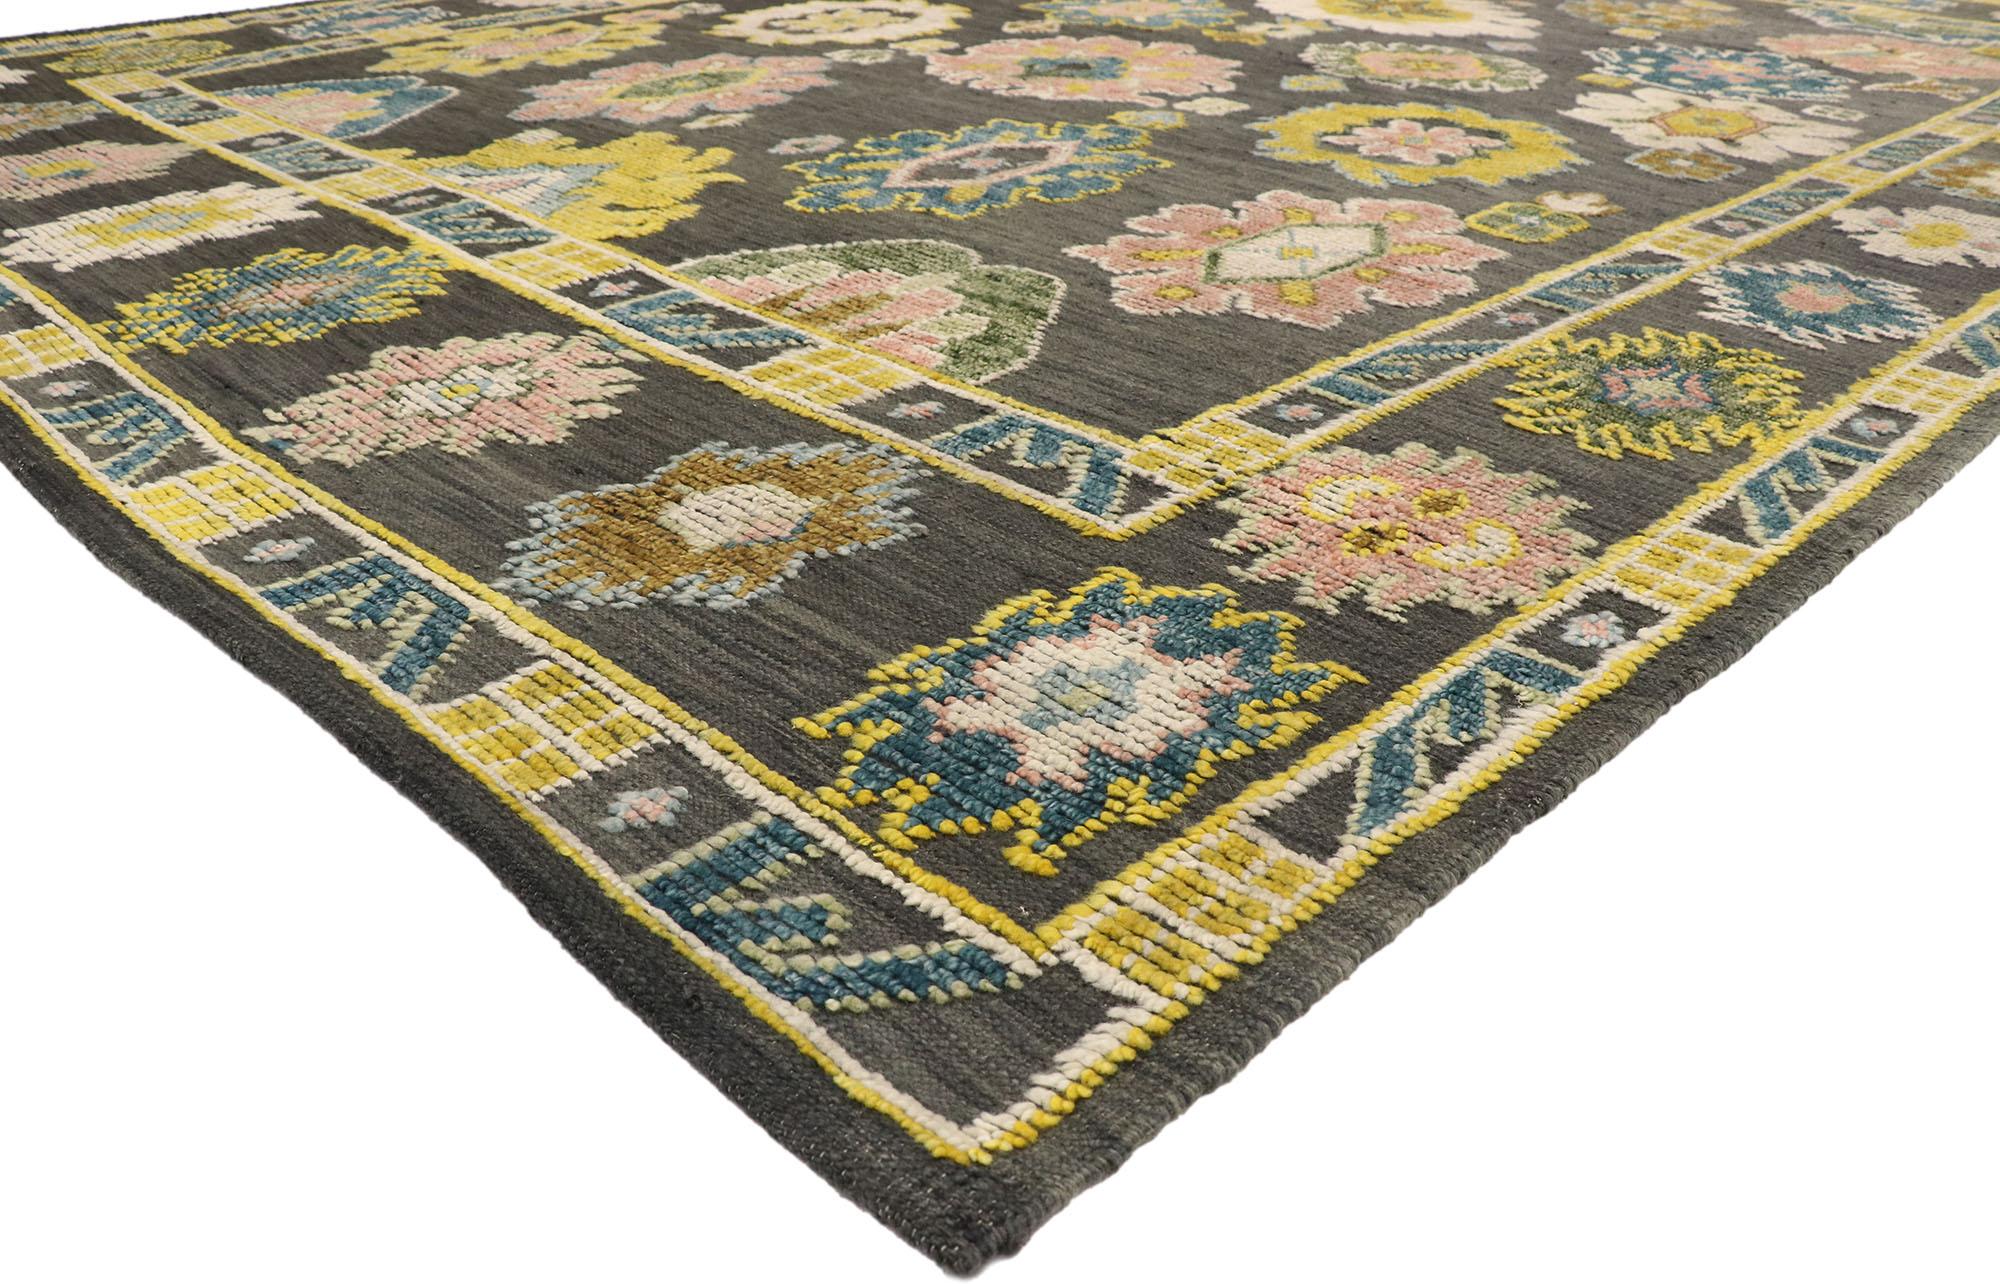 30517 New Oushak High-Low-Teppich, 10'06 x 13'06. Mit seinem erhabenen Muster mit unglaublichen Details und Texturen ist dieser Oushak-Teppich eine fesselnde Vision gewebter Schönheit. Das geometrische Muster und die lebendige Farbgebung, die in